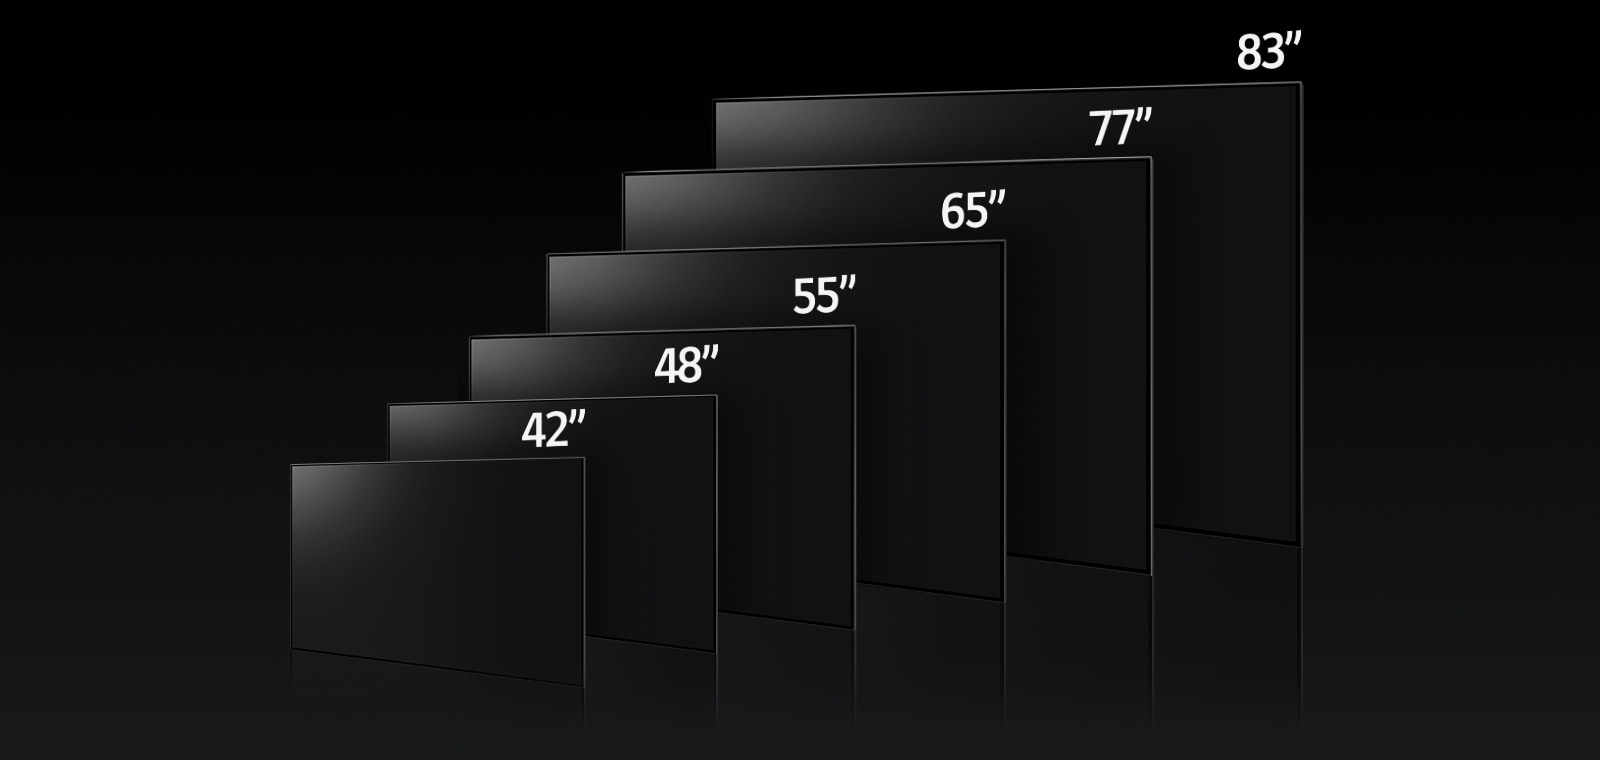 Immagine che confronta le varie dimensioni del prodotto LG OLED C3, mostrando le dimensioni 42", 48", 55", 65", 77" e 83".